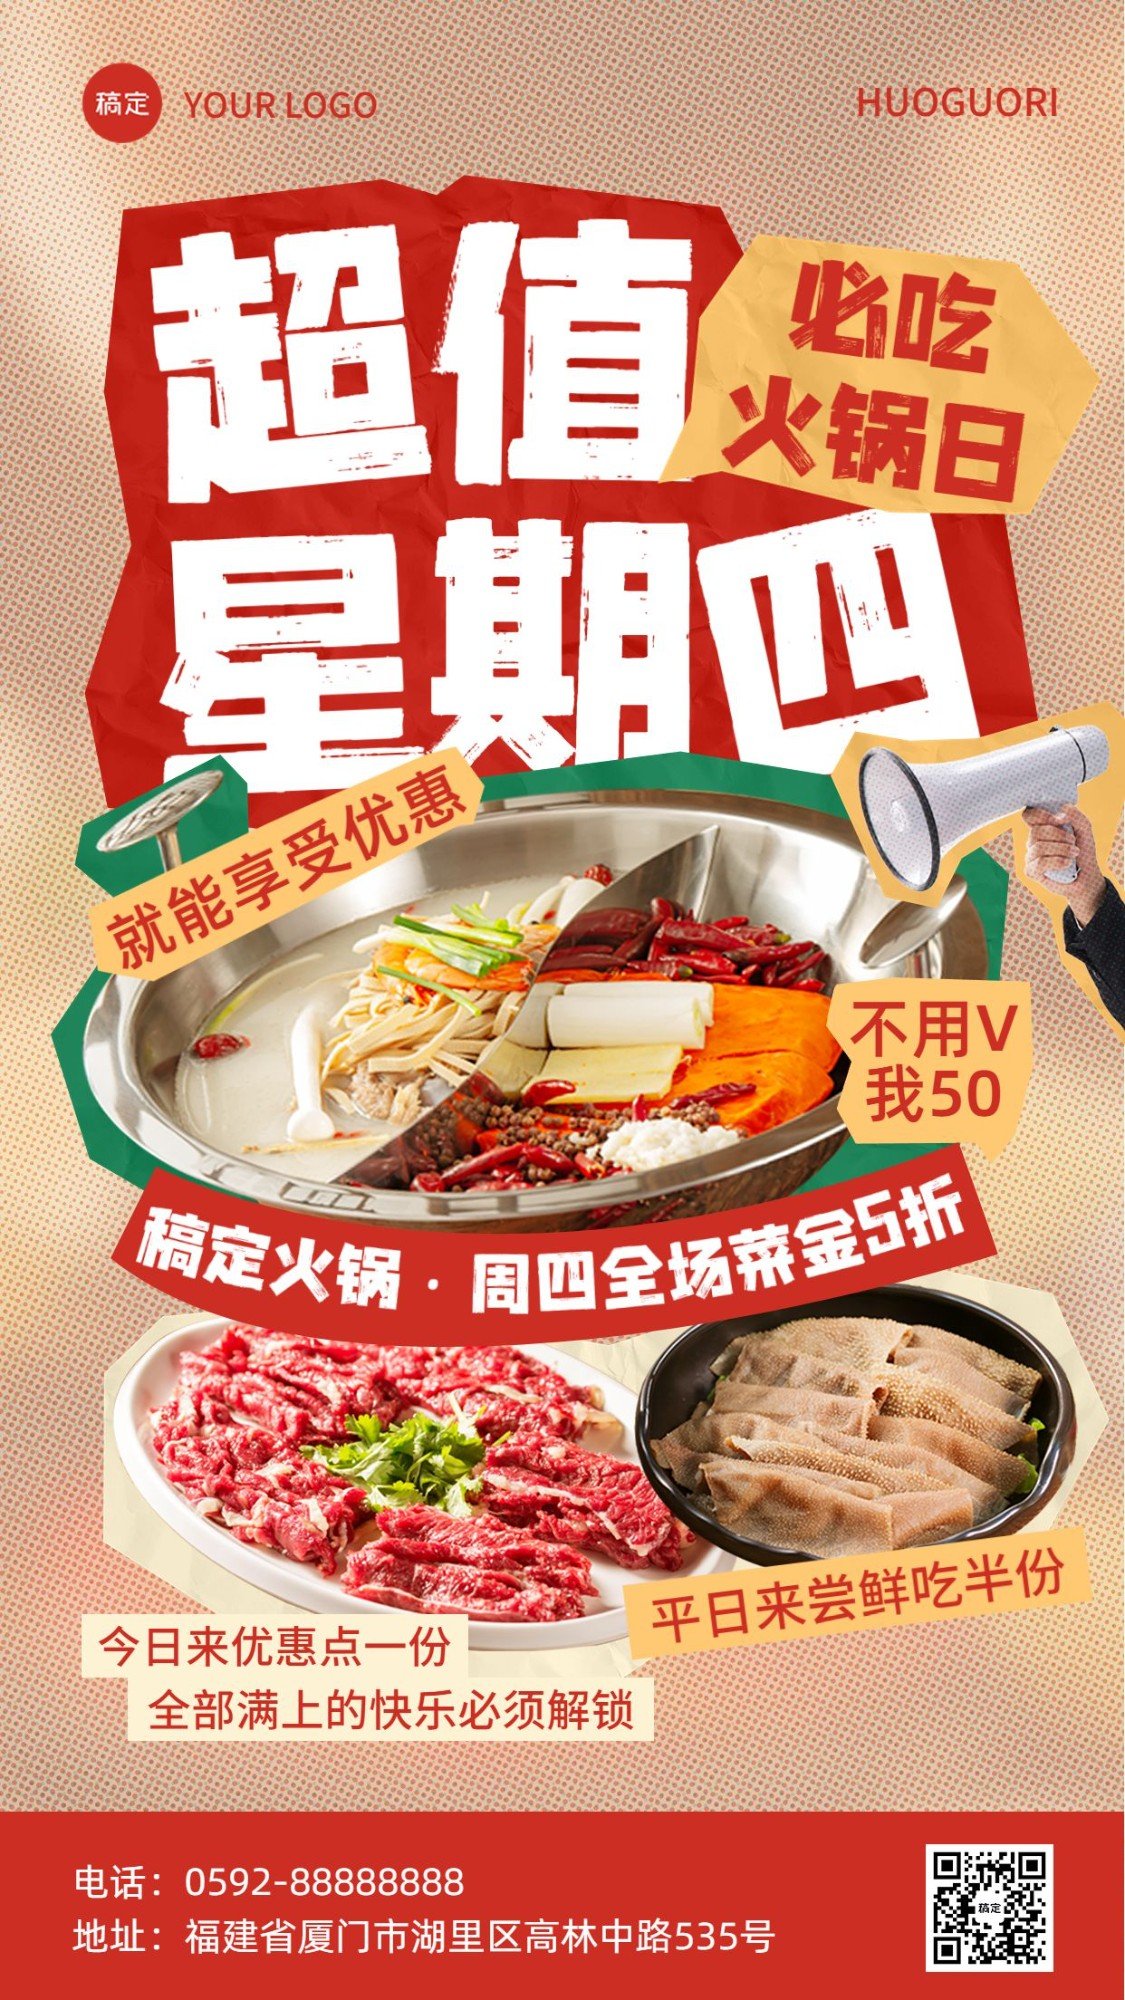 餐饮美食火锅烤肉周主题活动营销全屏竖版海报